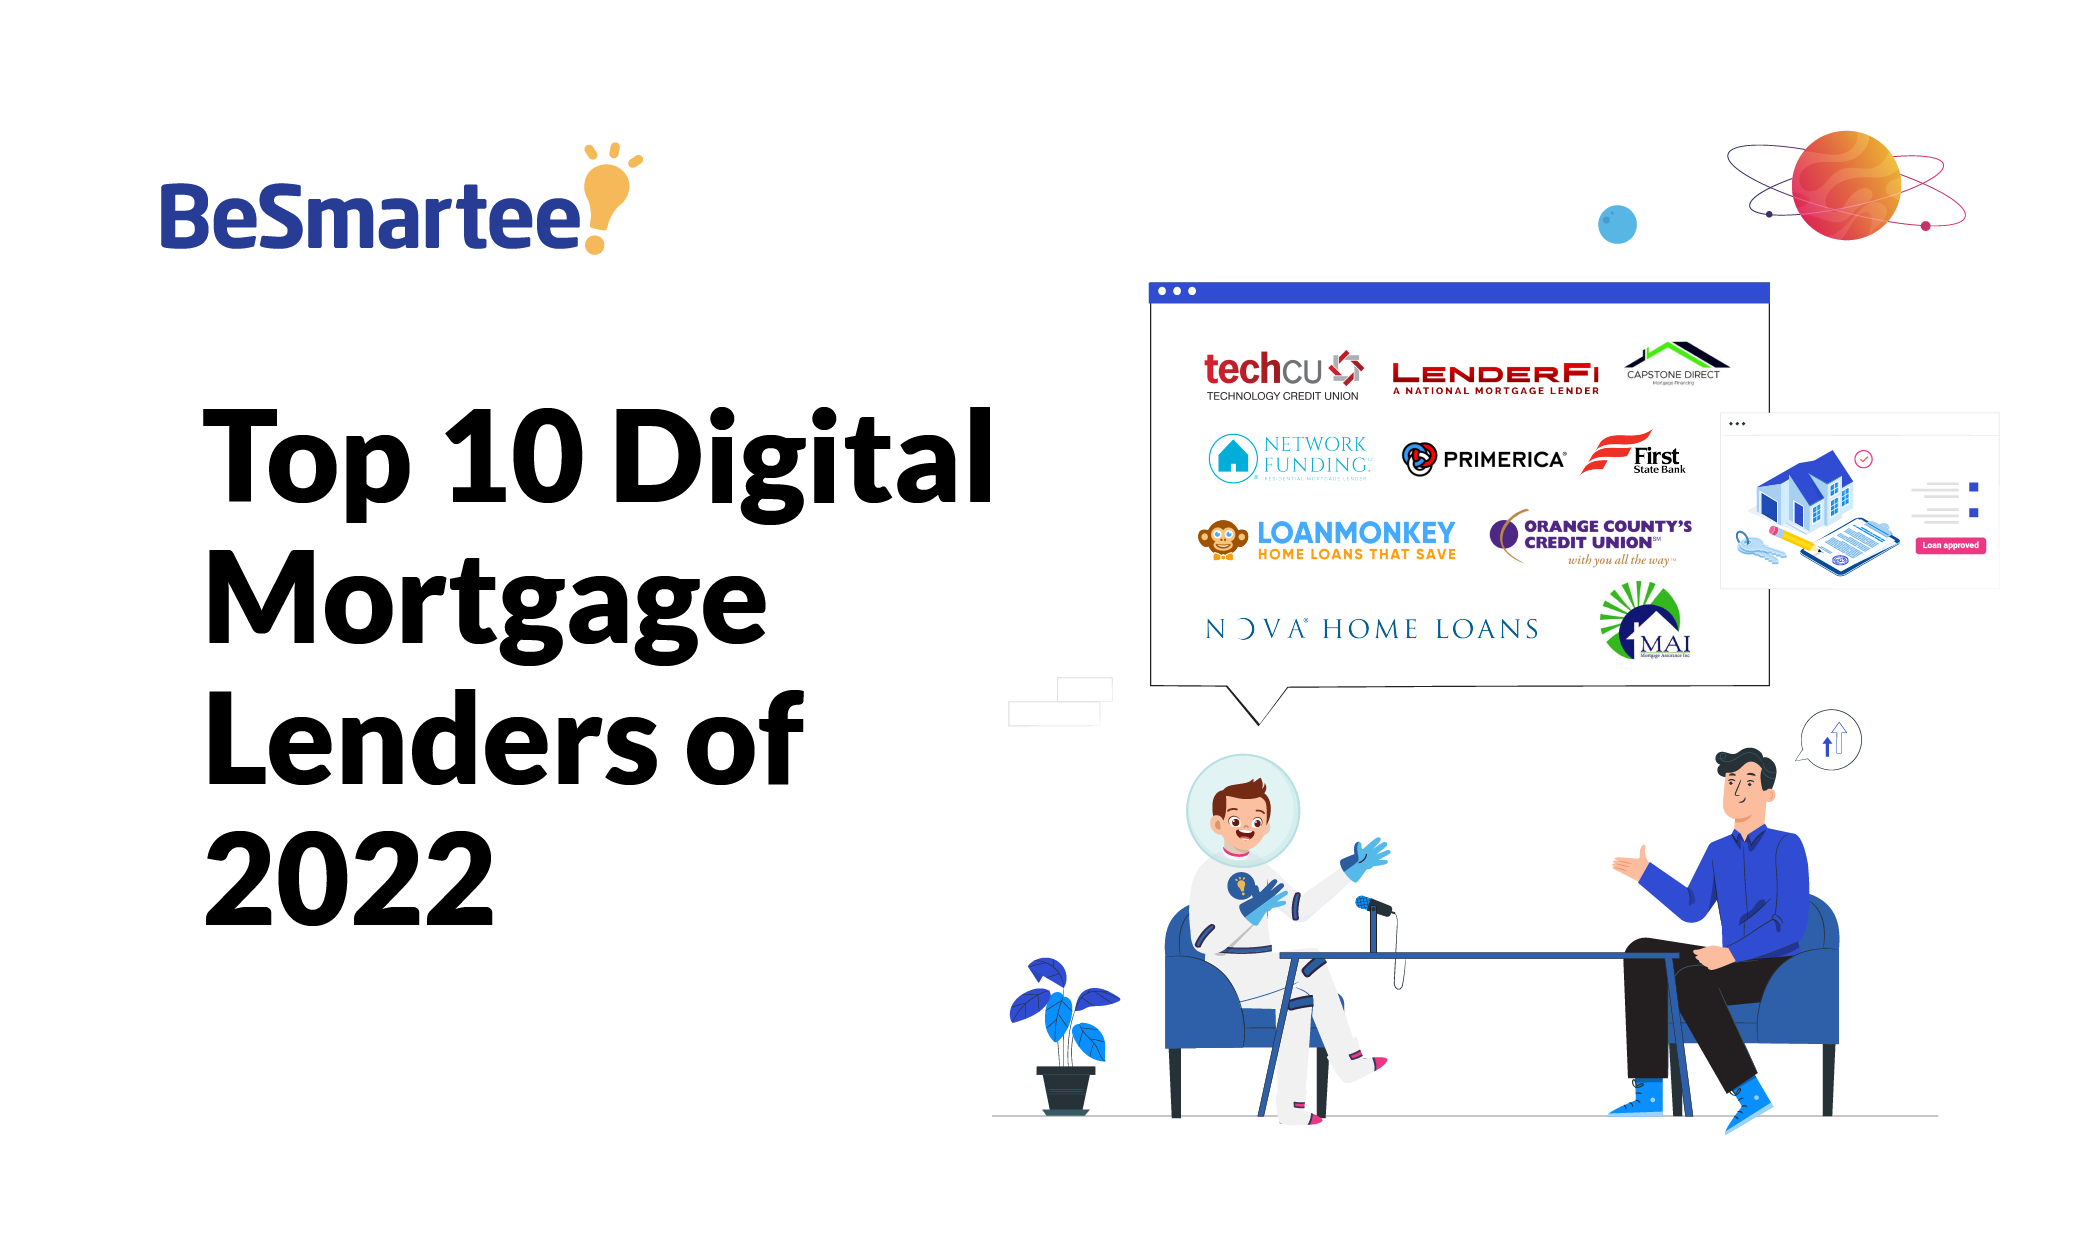 Top 10 Digital Mortgage Lenders of 2022